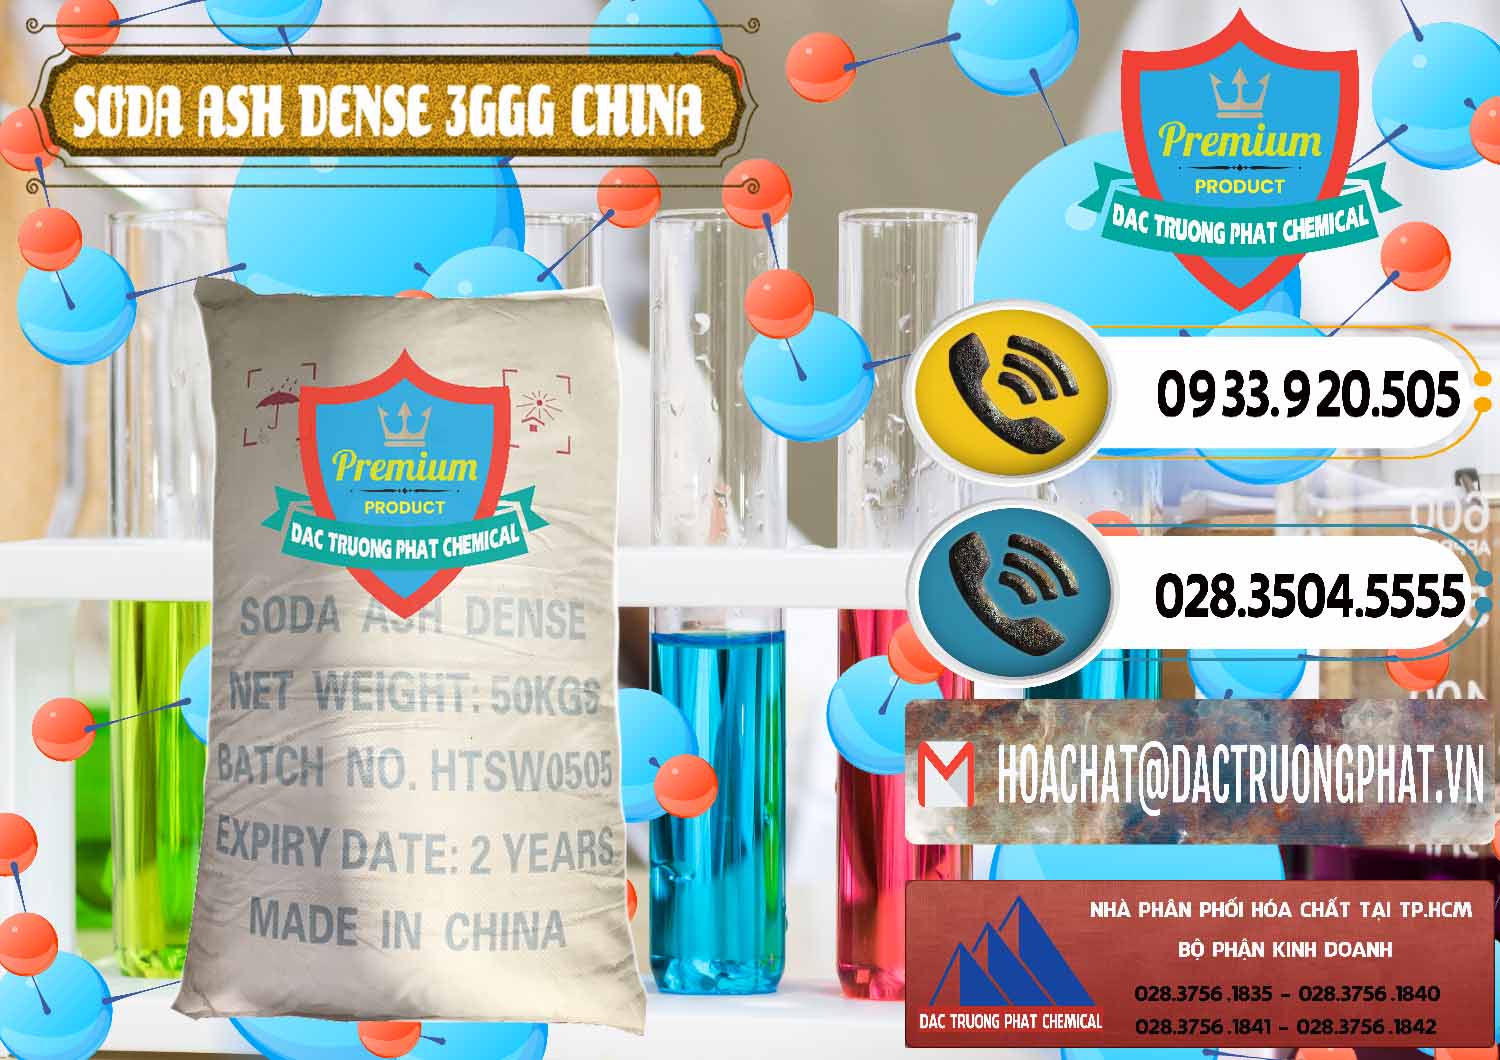 Công ty chuyên bán và cung cấp Soda Ash Dense - NA2CO3 3GGG Trung Quốc China - 0335 - Đơn vị nhập khẩu & cung cấp hóa chất tại TP.HCM - hoachatdetnhuom.vn